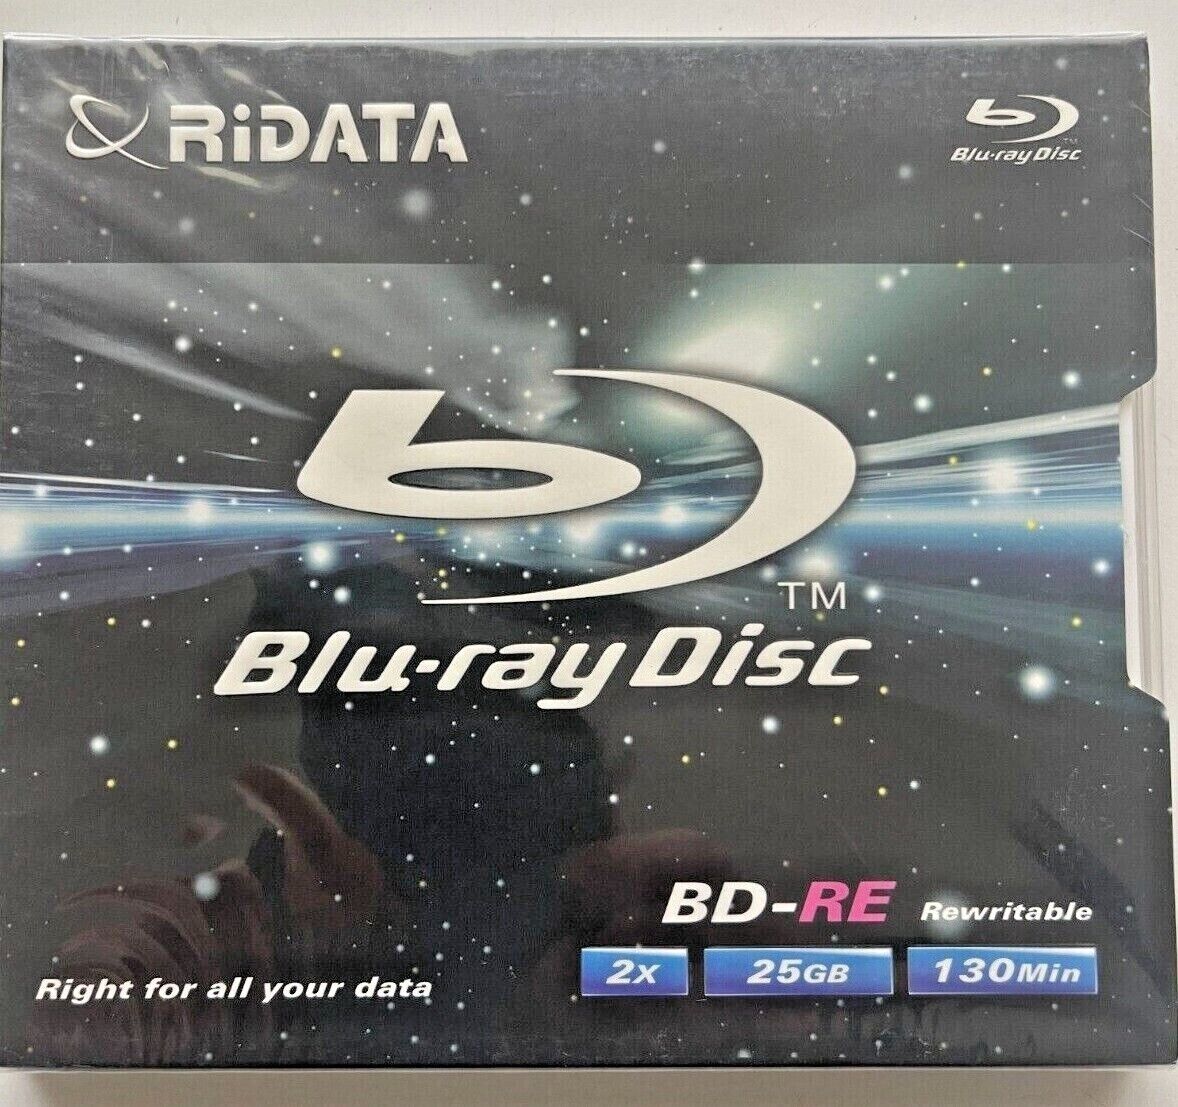 5 RiDATA BD-RE Blu-Ray Disc Rewritable 2 x 25GB 130min RiTEK Discontinued Model 